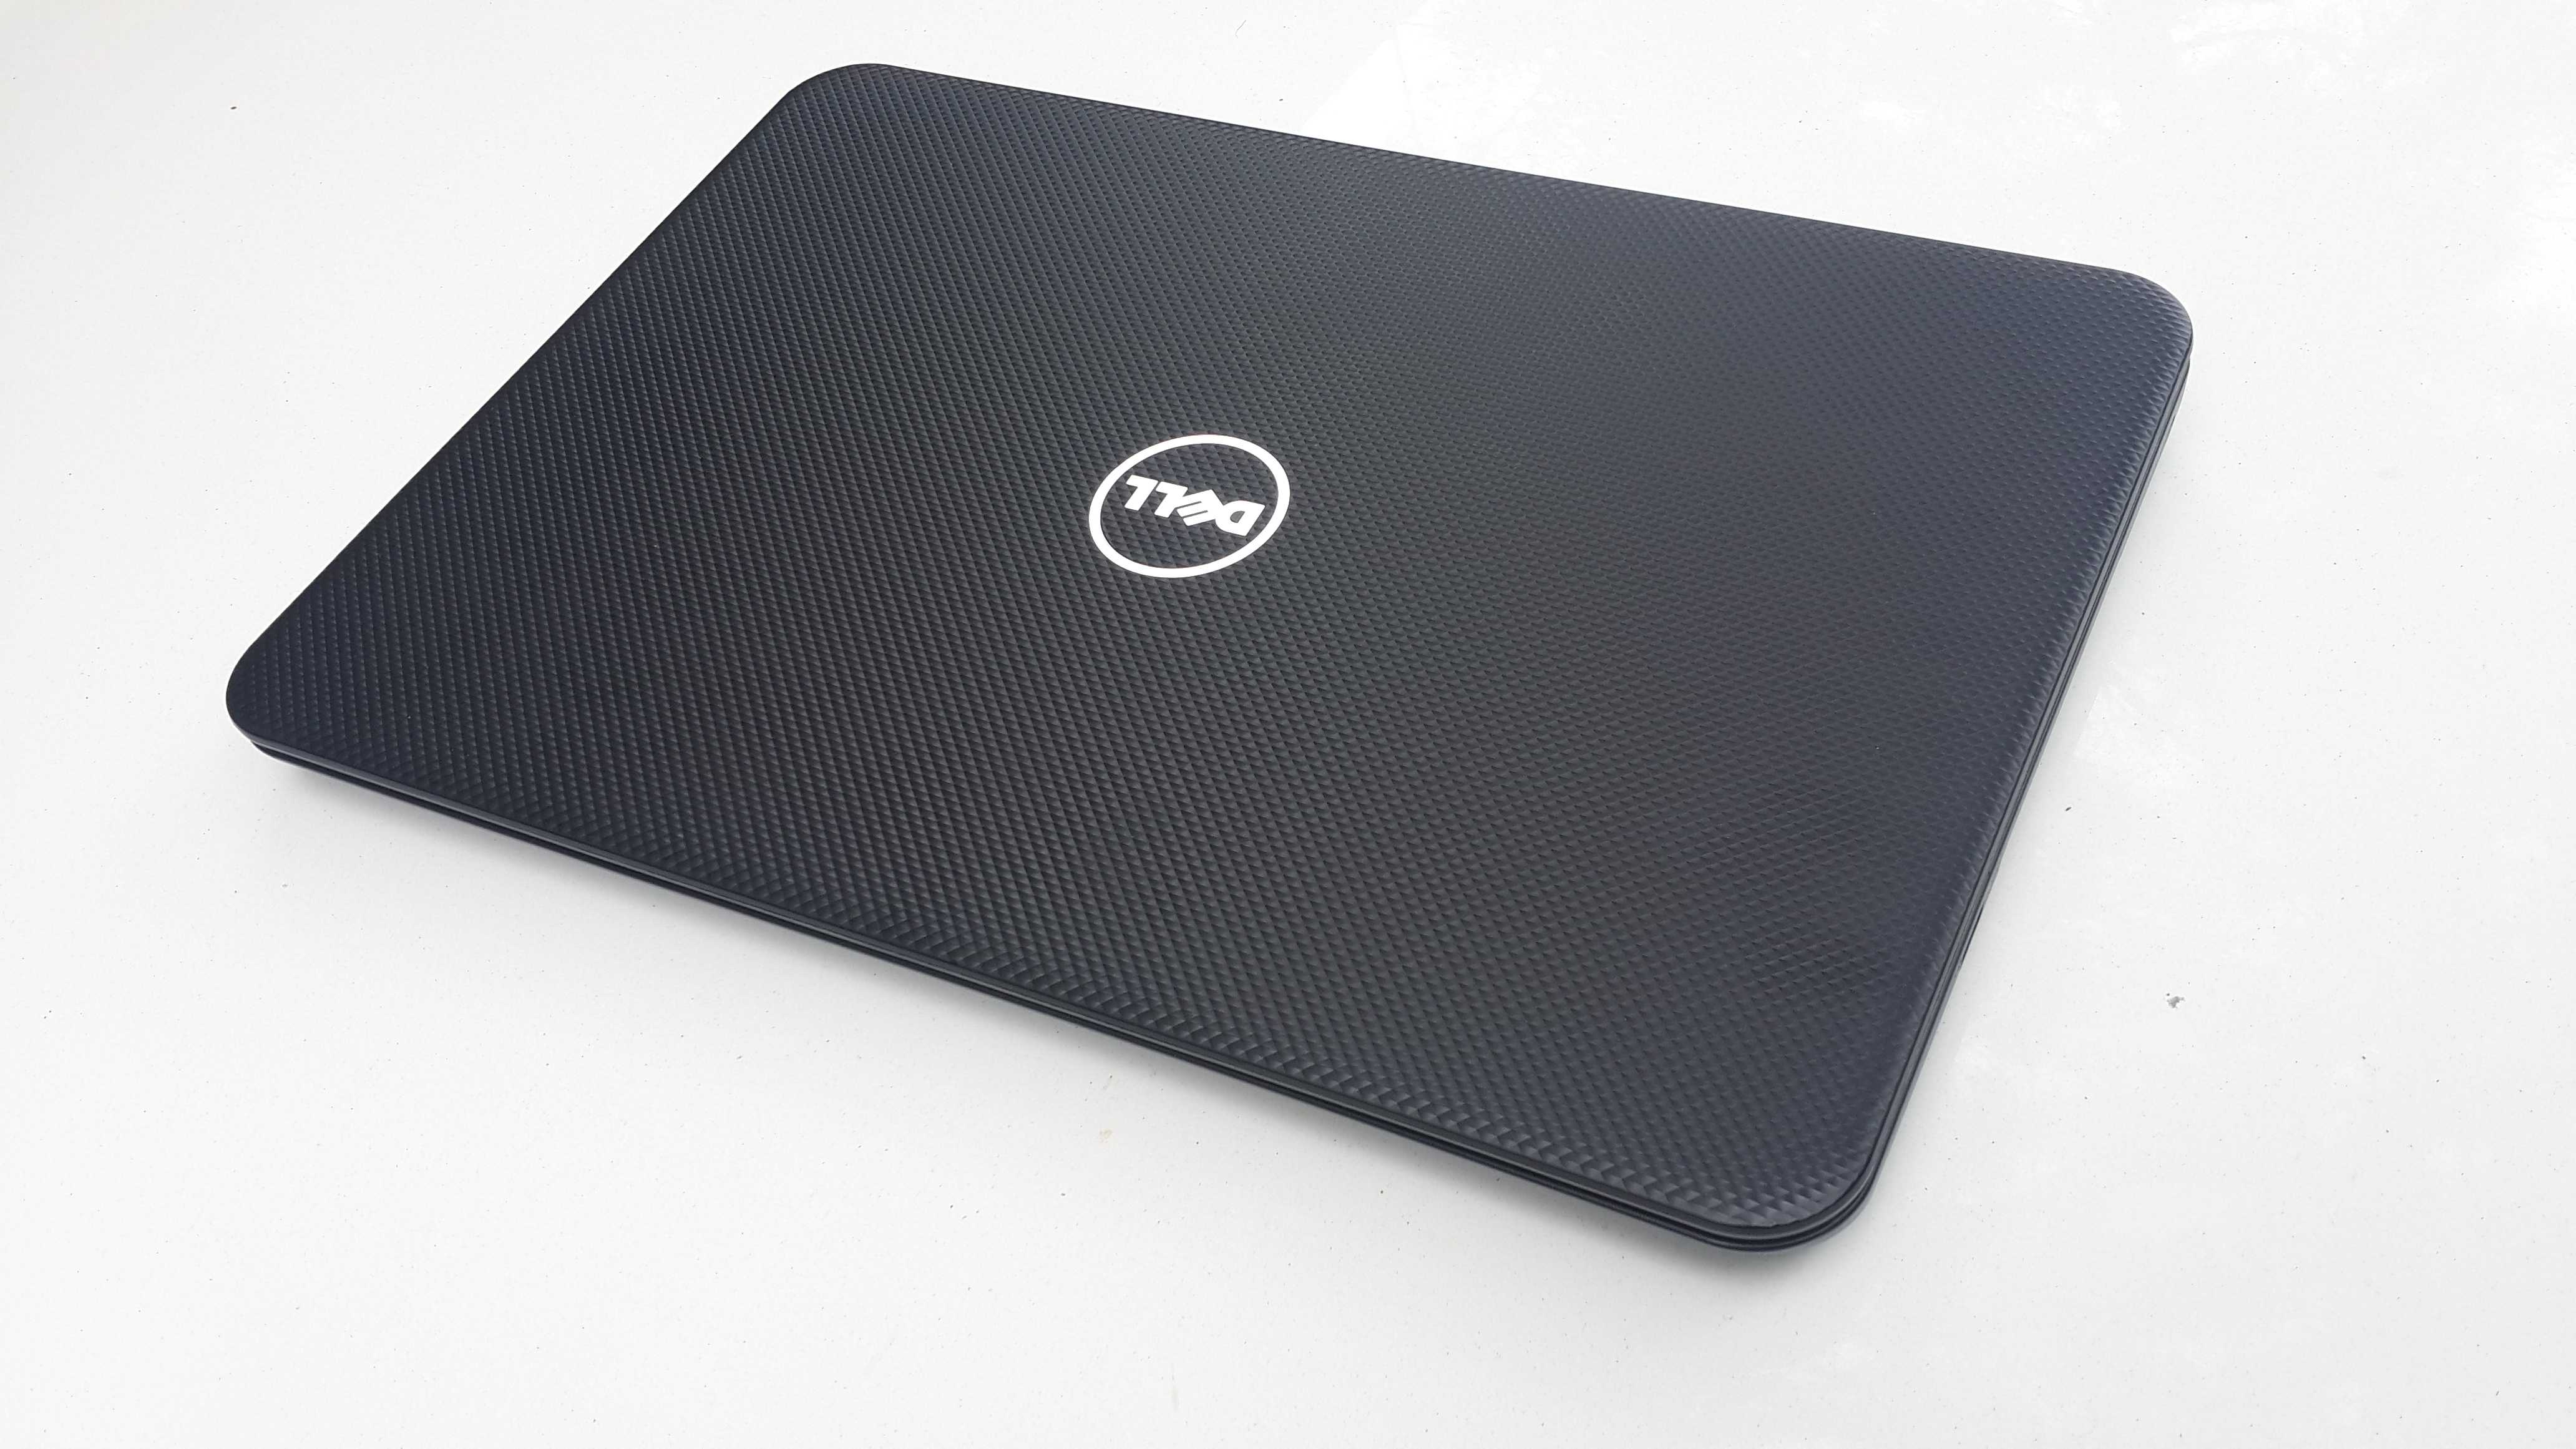 Ноутбук Dell Inspiron 3521 (I3521Hi3317D6C750Lblk) - подробные характеристики обзоры видео фото Цены в интернет-магазинах где можно купить ноутбук Dell Inspiron 3521 (I3521Hi3317D6C750Lblk)